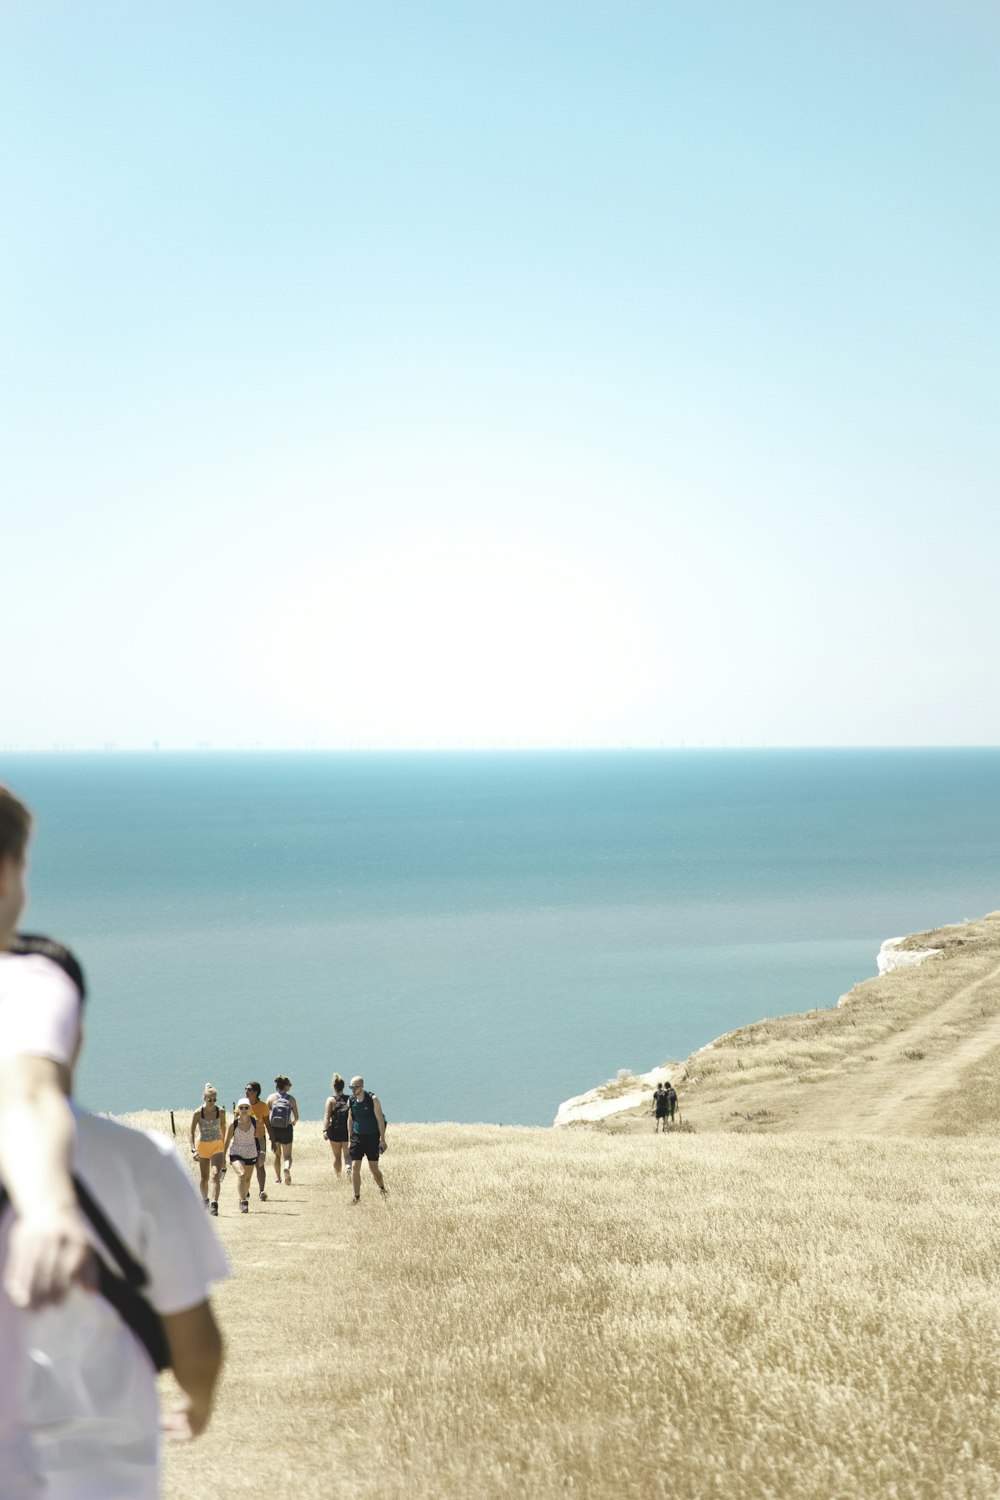 personnes debout sur une formation rocheuse brune près d’un plan d’eau pendant la journée